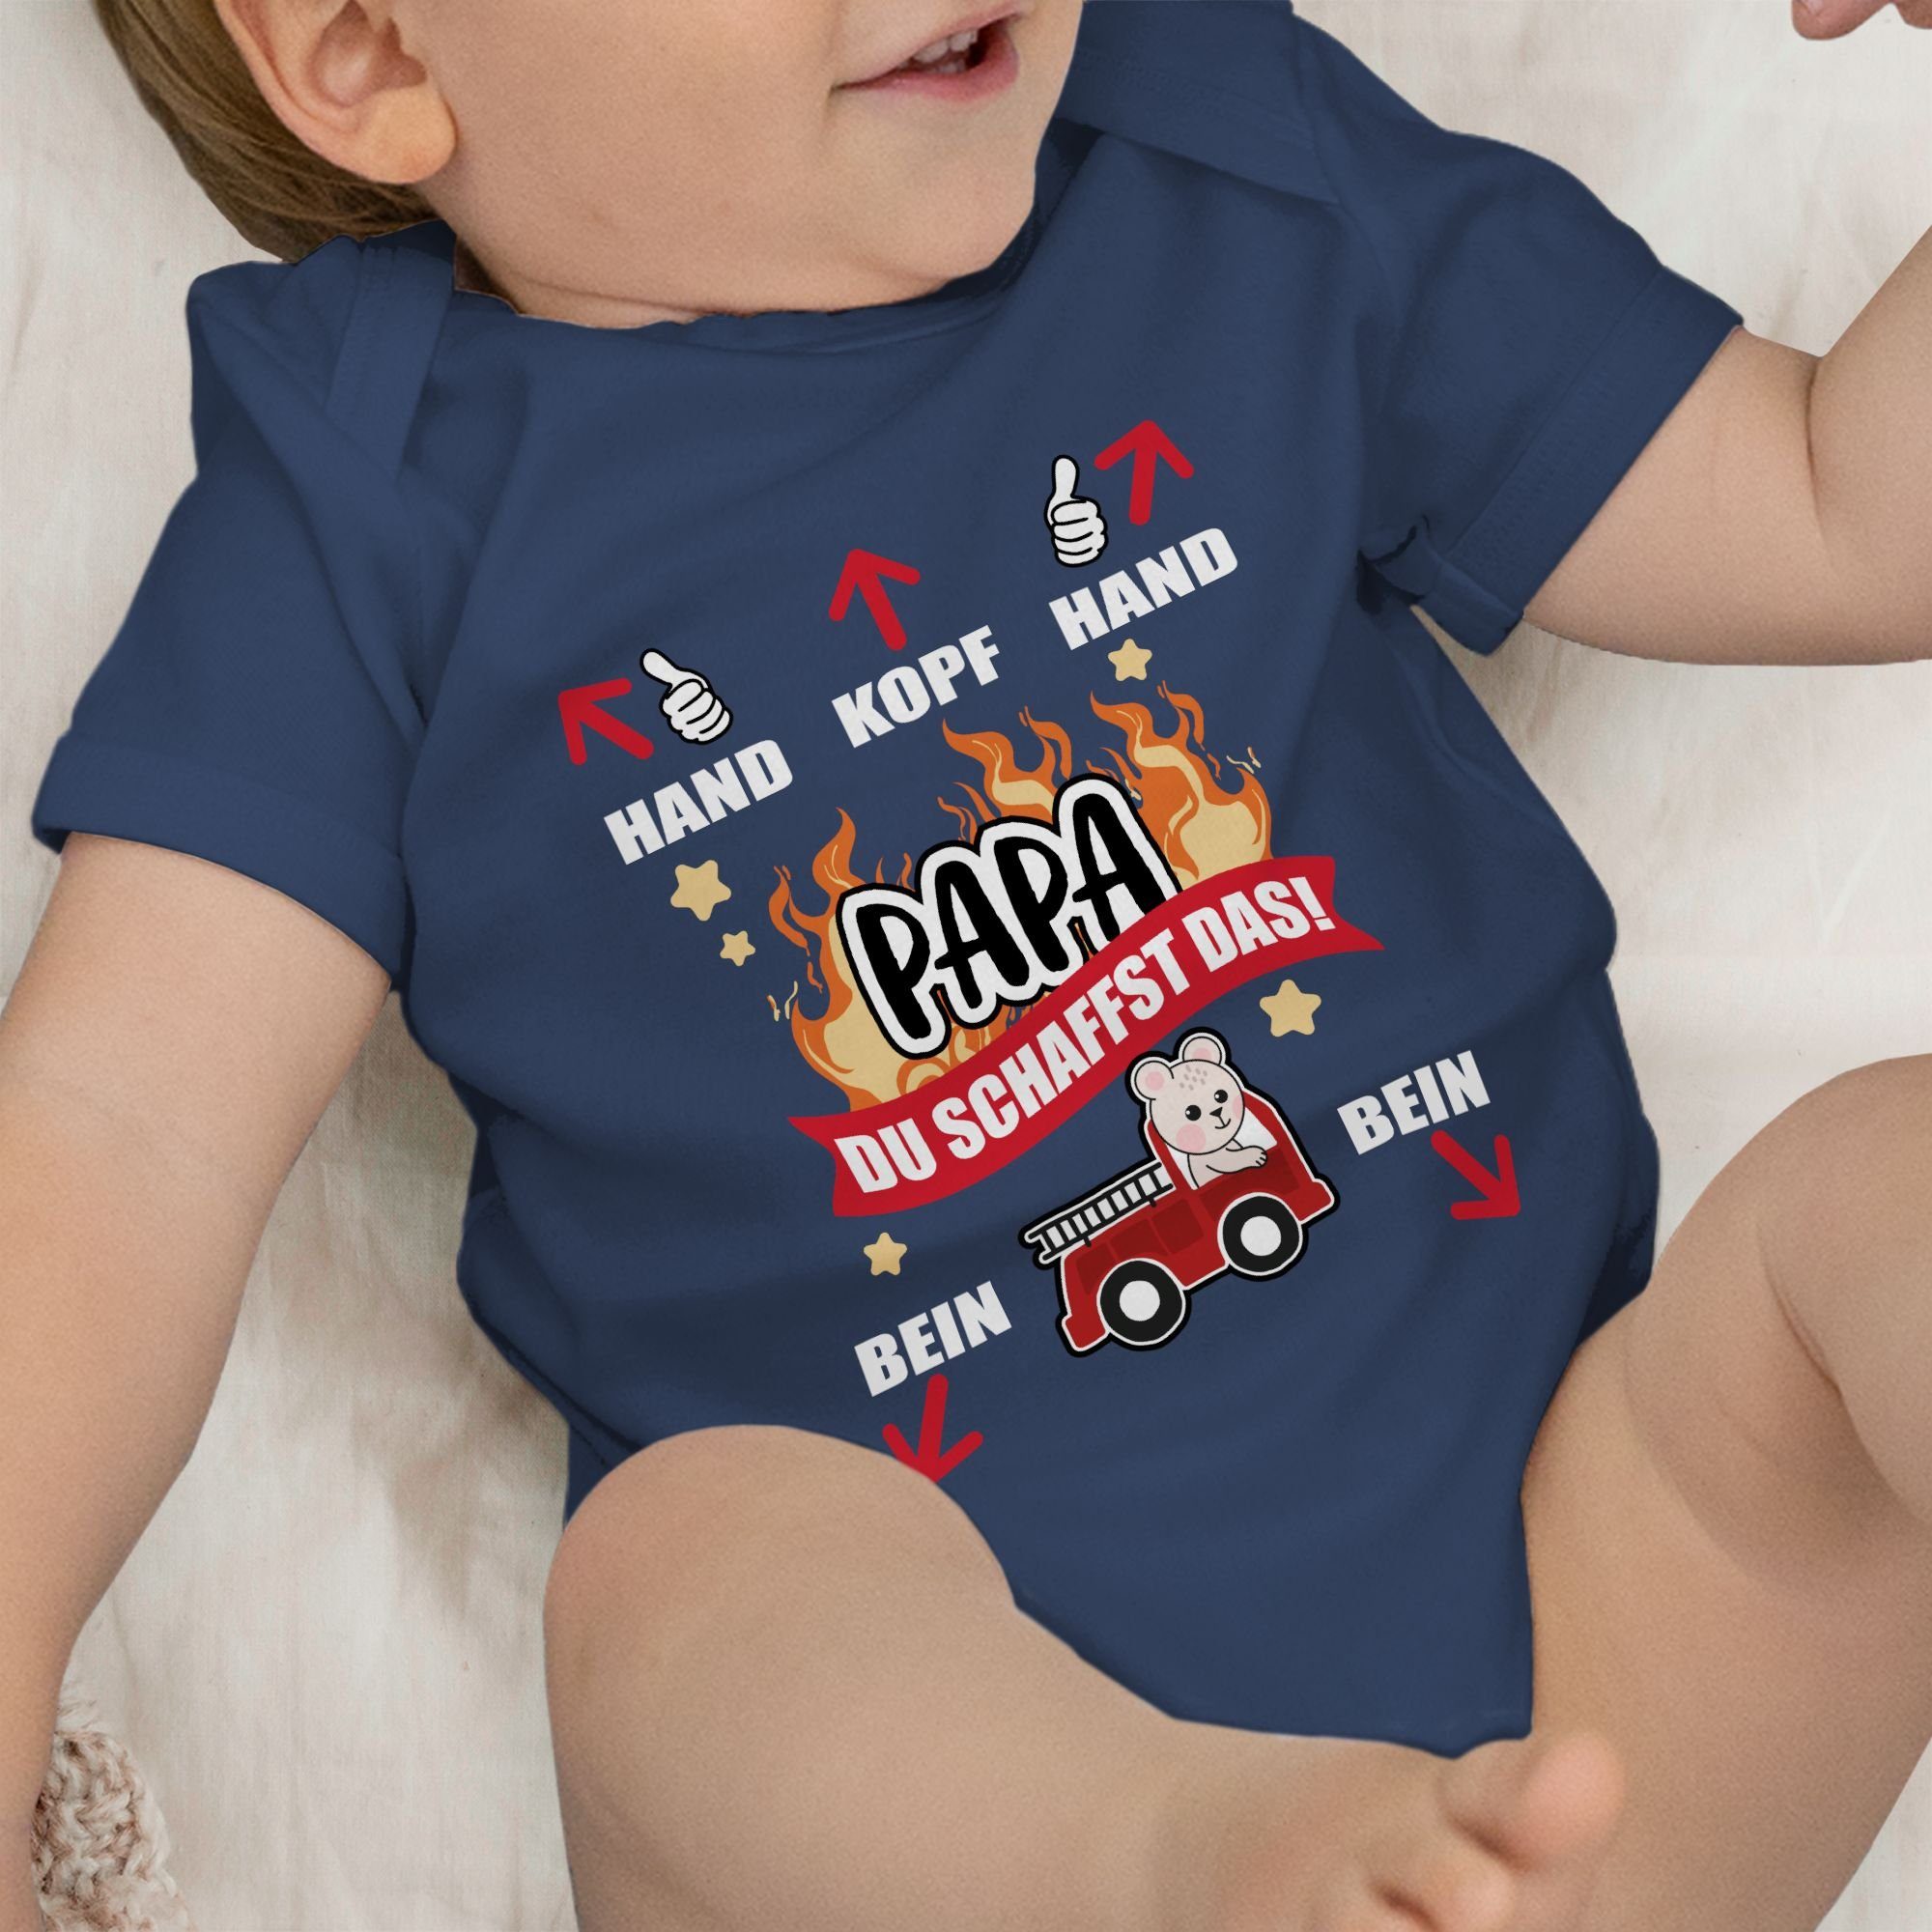 Navy Feuerwehr Vatertag schaffst weiß - Shirtracer du - Shirtbody Geschenk Blau das Papa 1 Baby